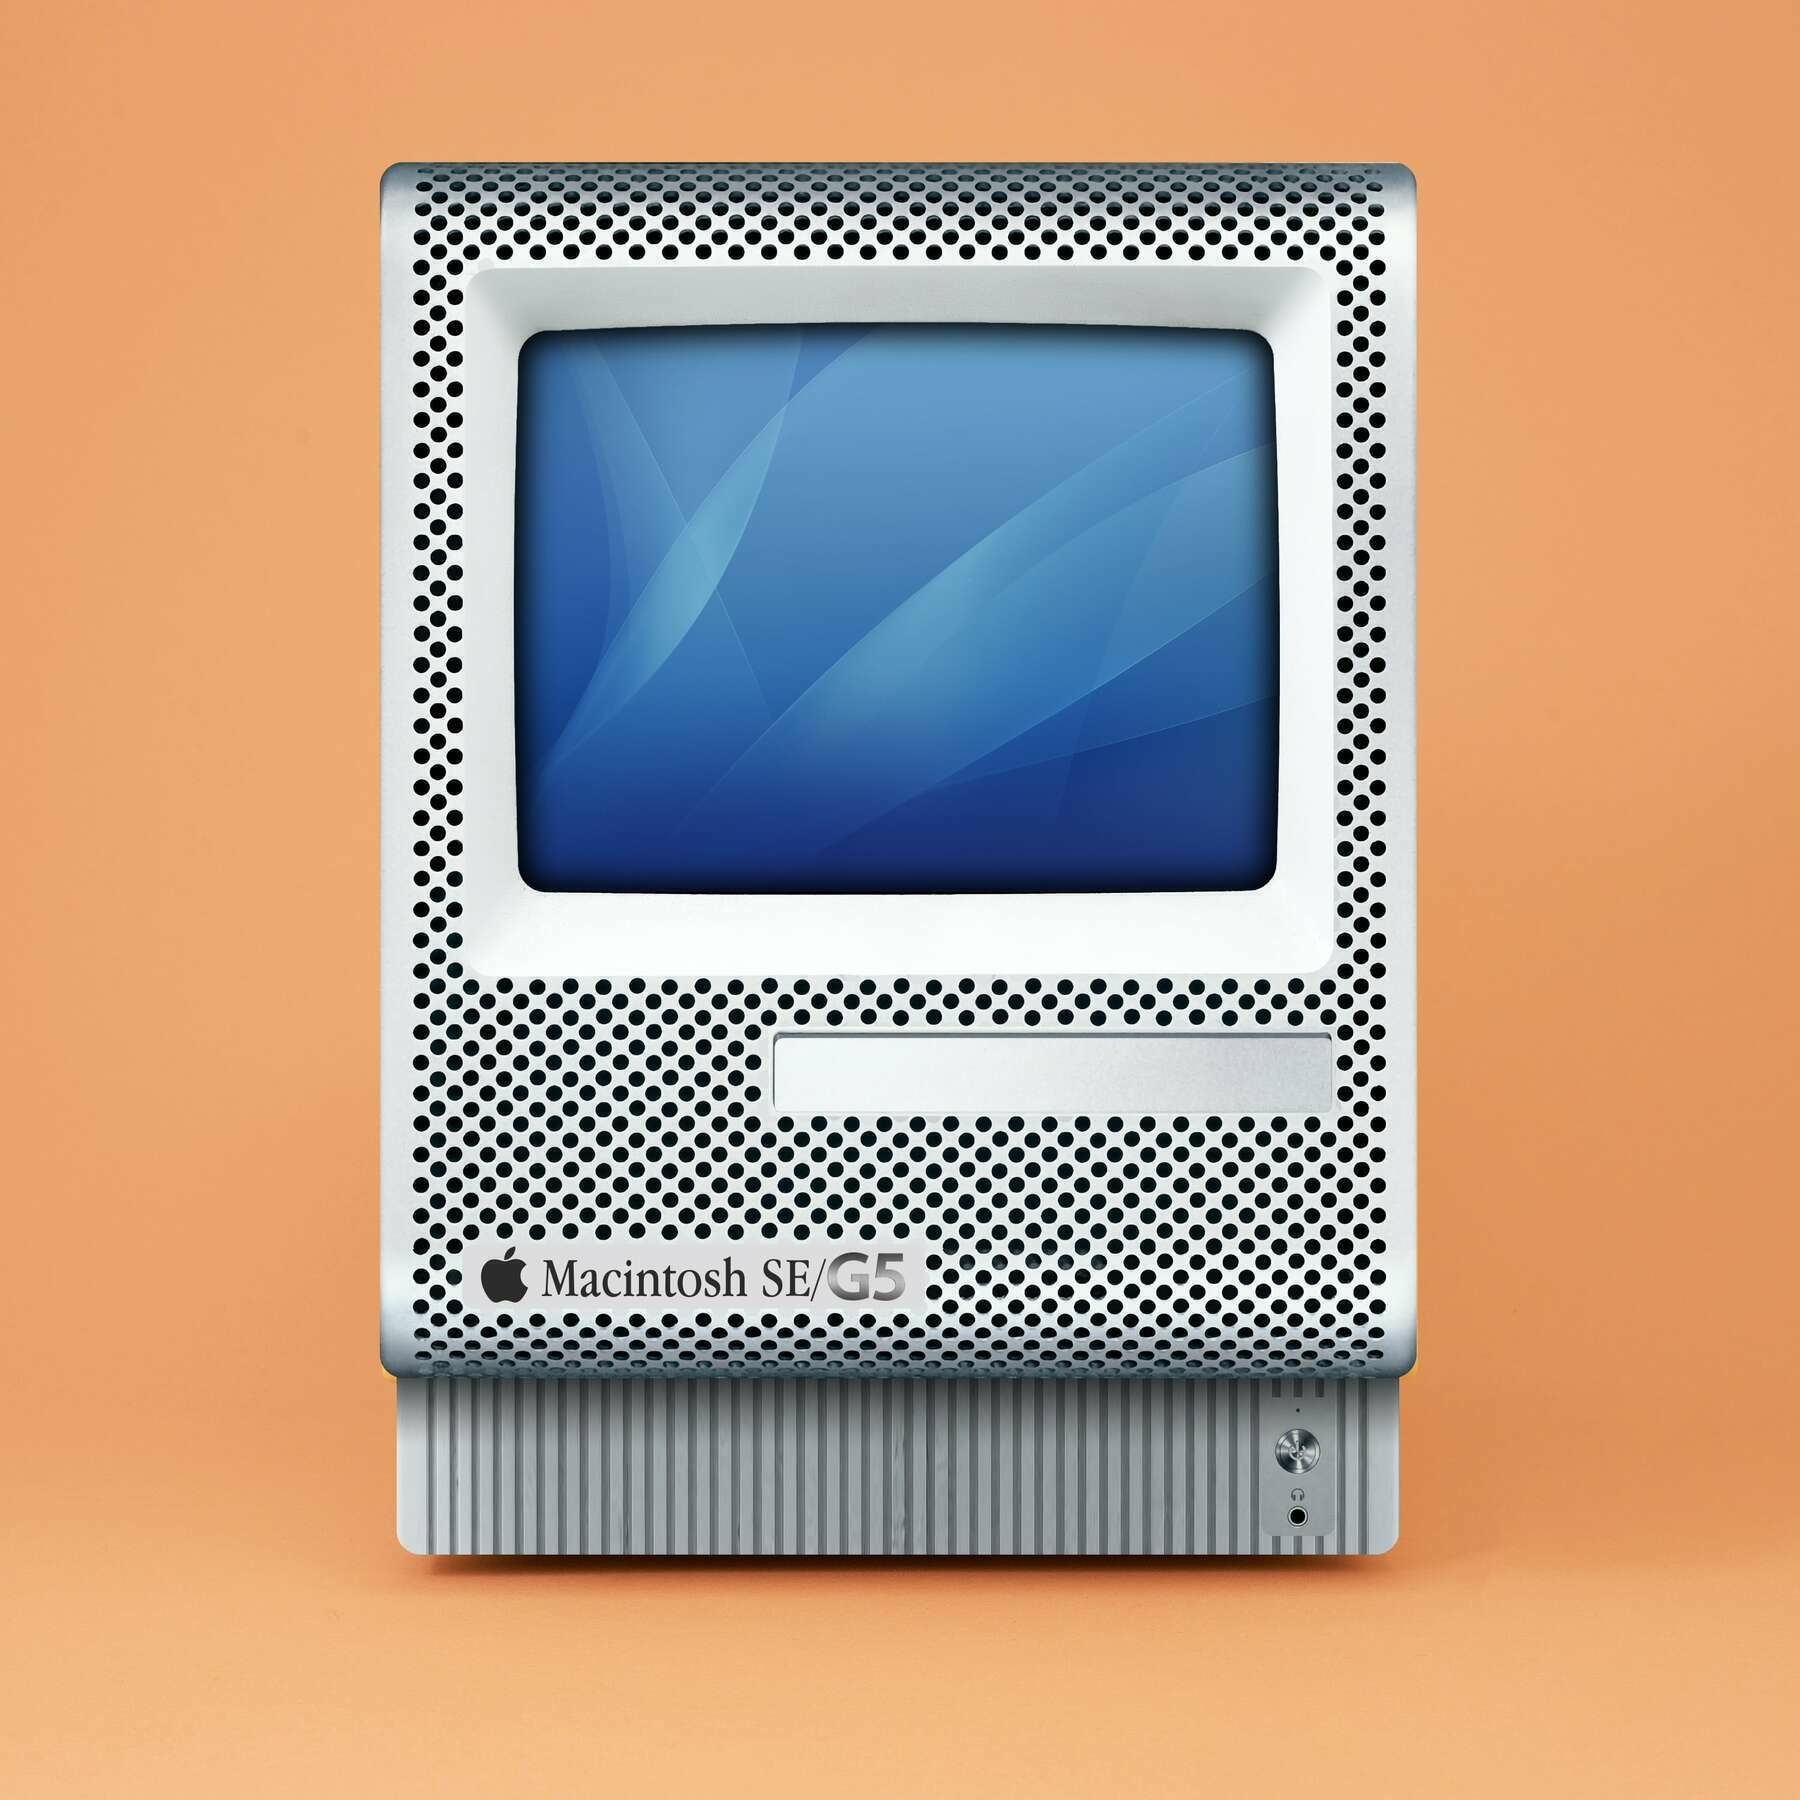 Macintosh SE/G5